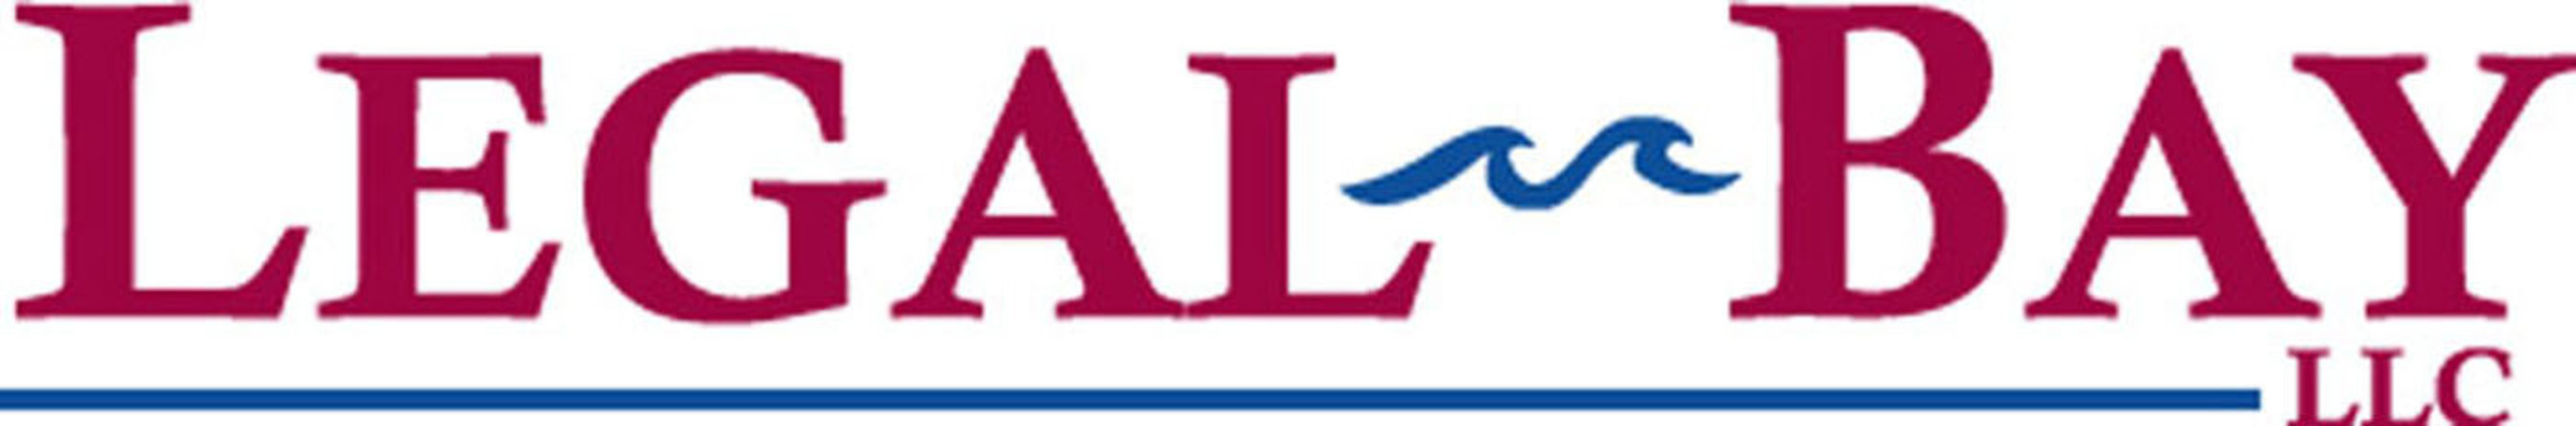 Legal-Bay LLC Logo. (PRNewsFoto/Legal-Bay.com) (PRNewsFoto/LEGAL-BAY.COM)